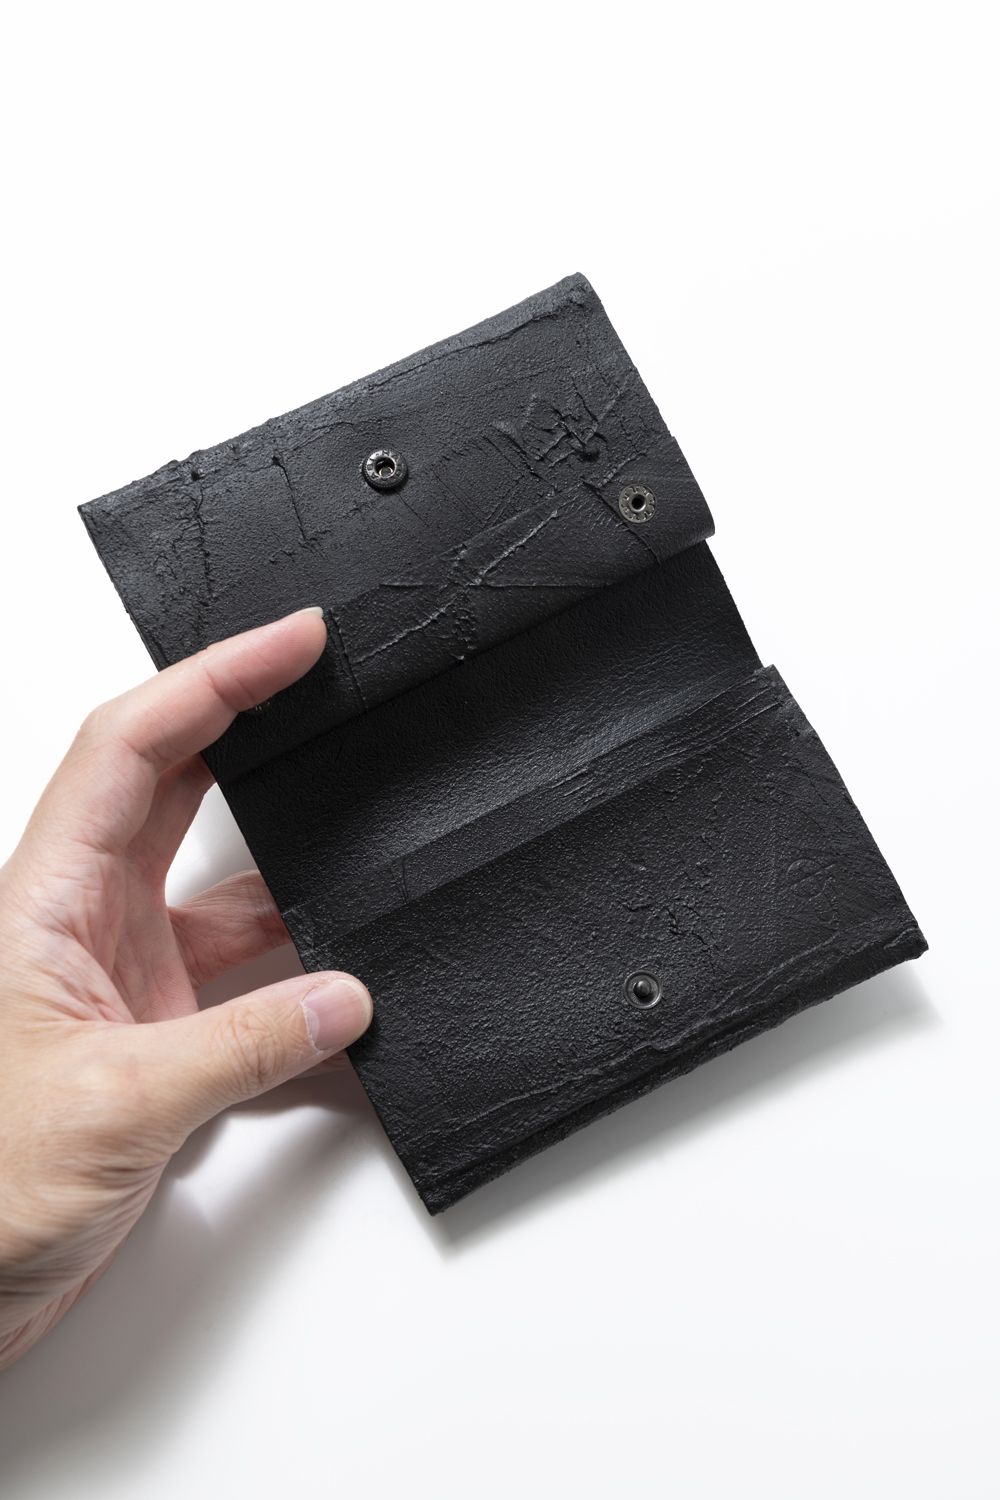 KAGARI YUSUKE - 【お取り寄せ可能】二つ折り財布 [黒い壁] / mw13-bk 